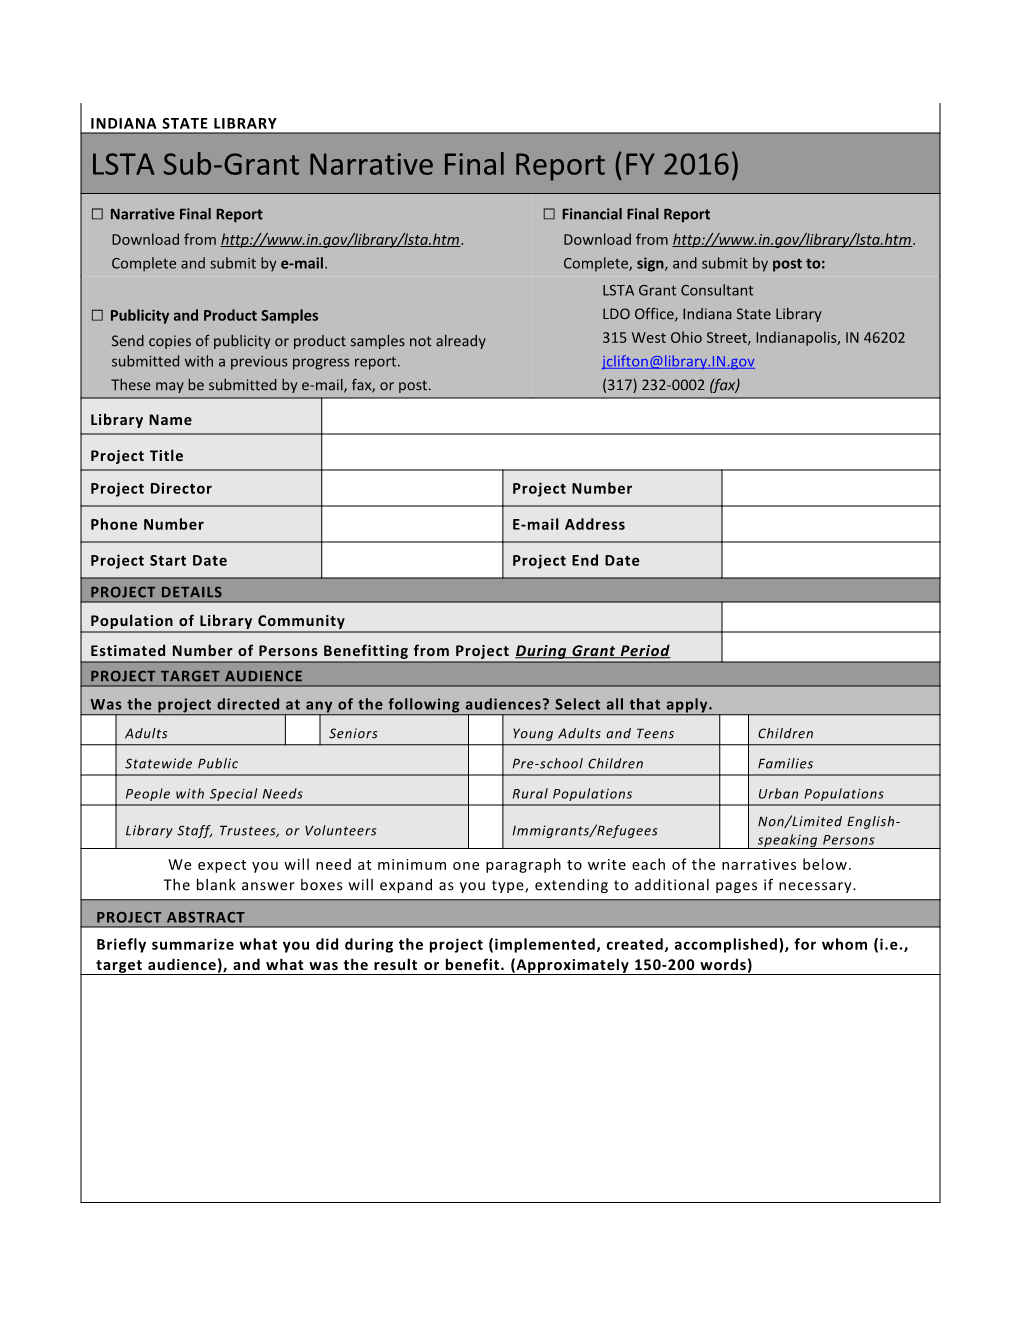 LSTA Sub-Grant Narrative Final Report (FY 2016)